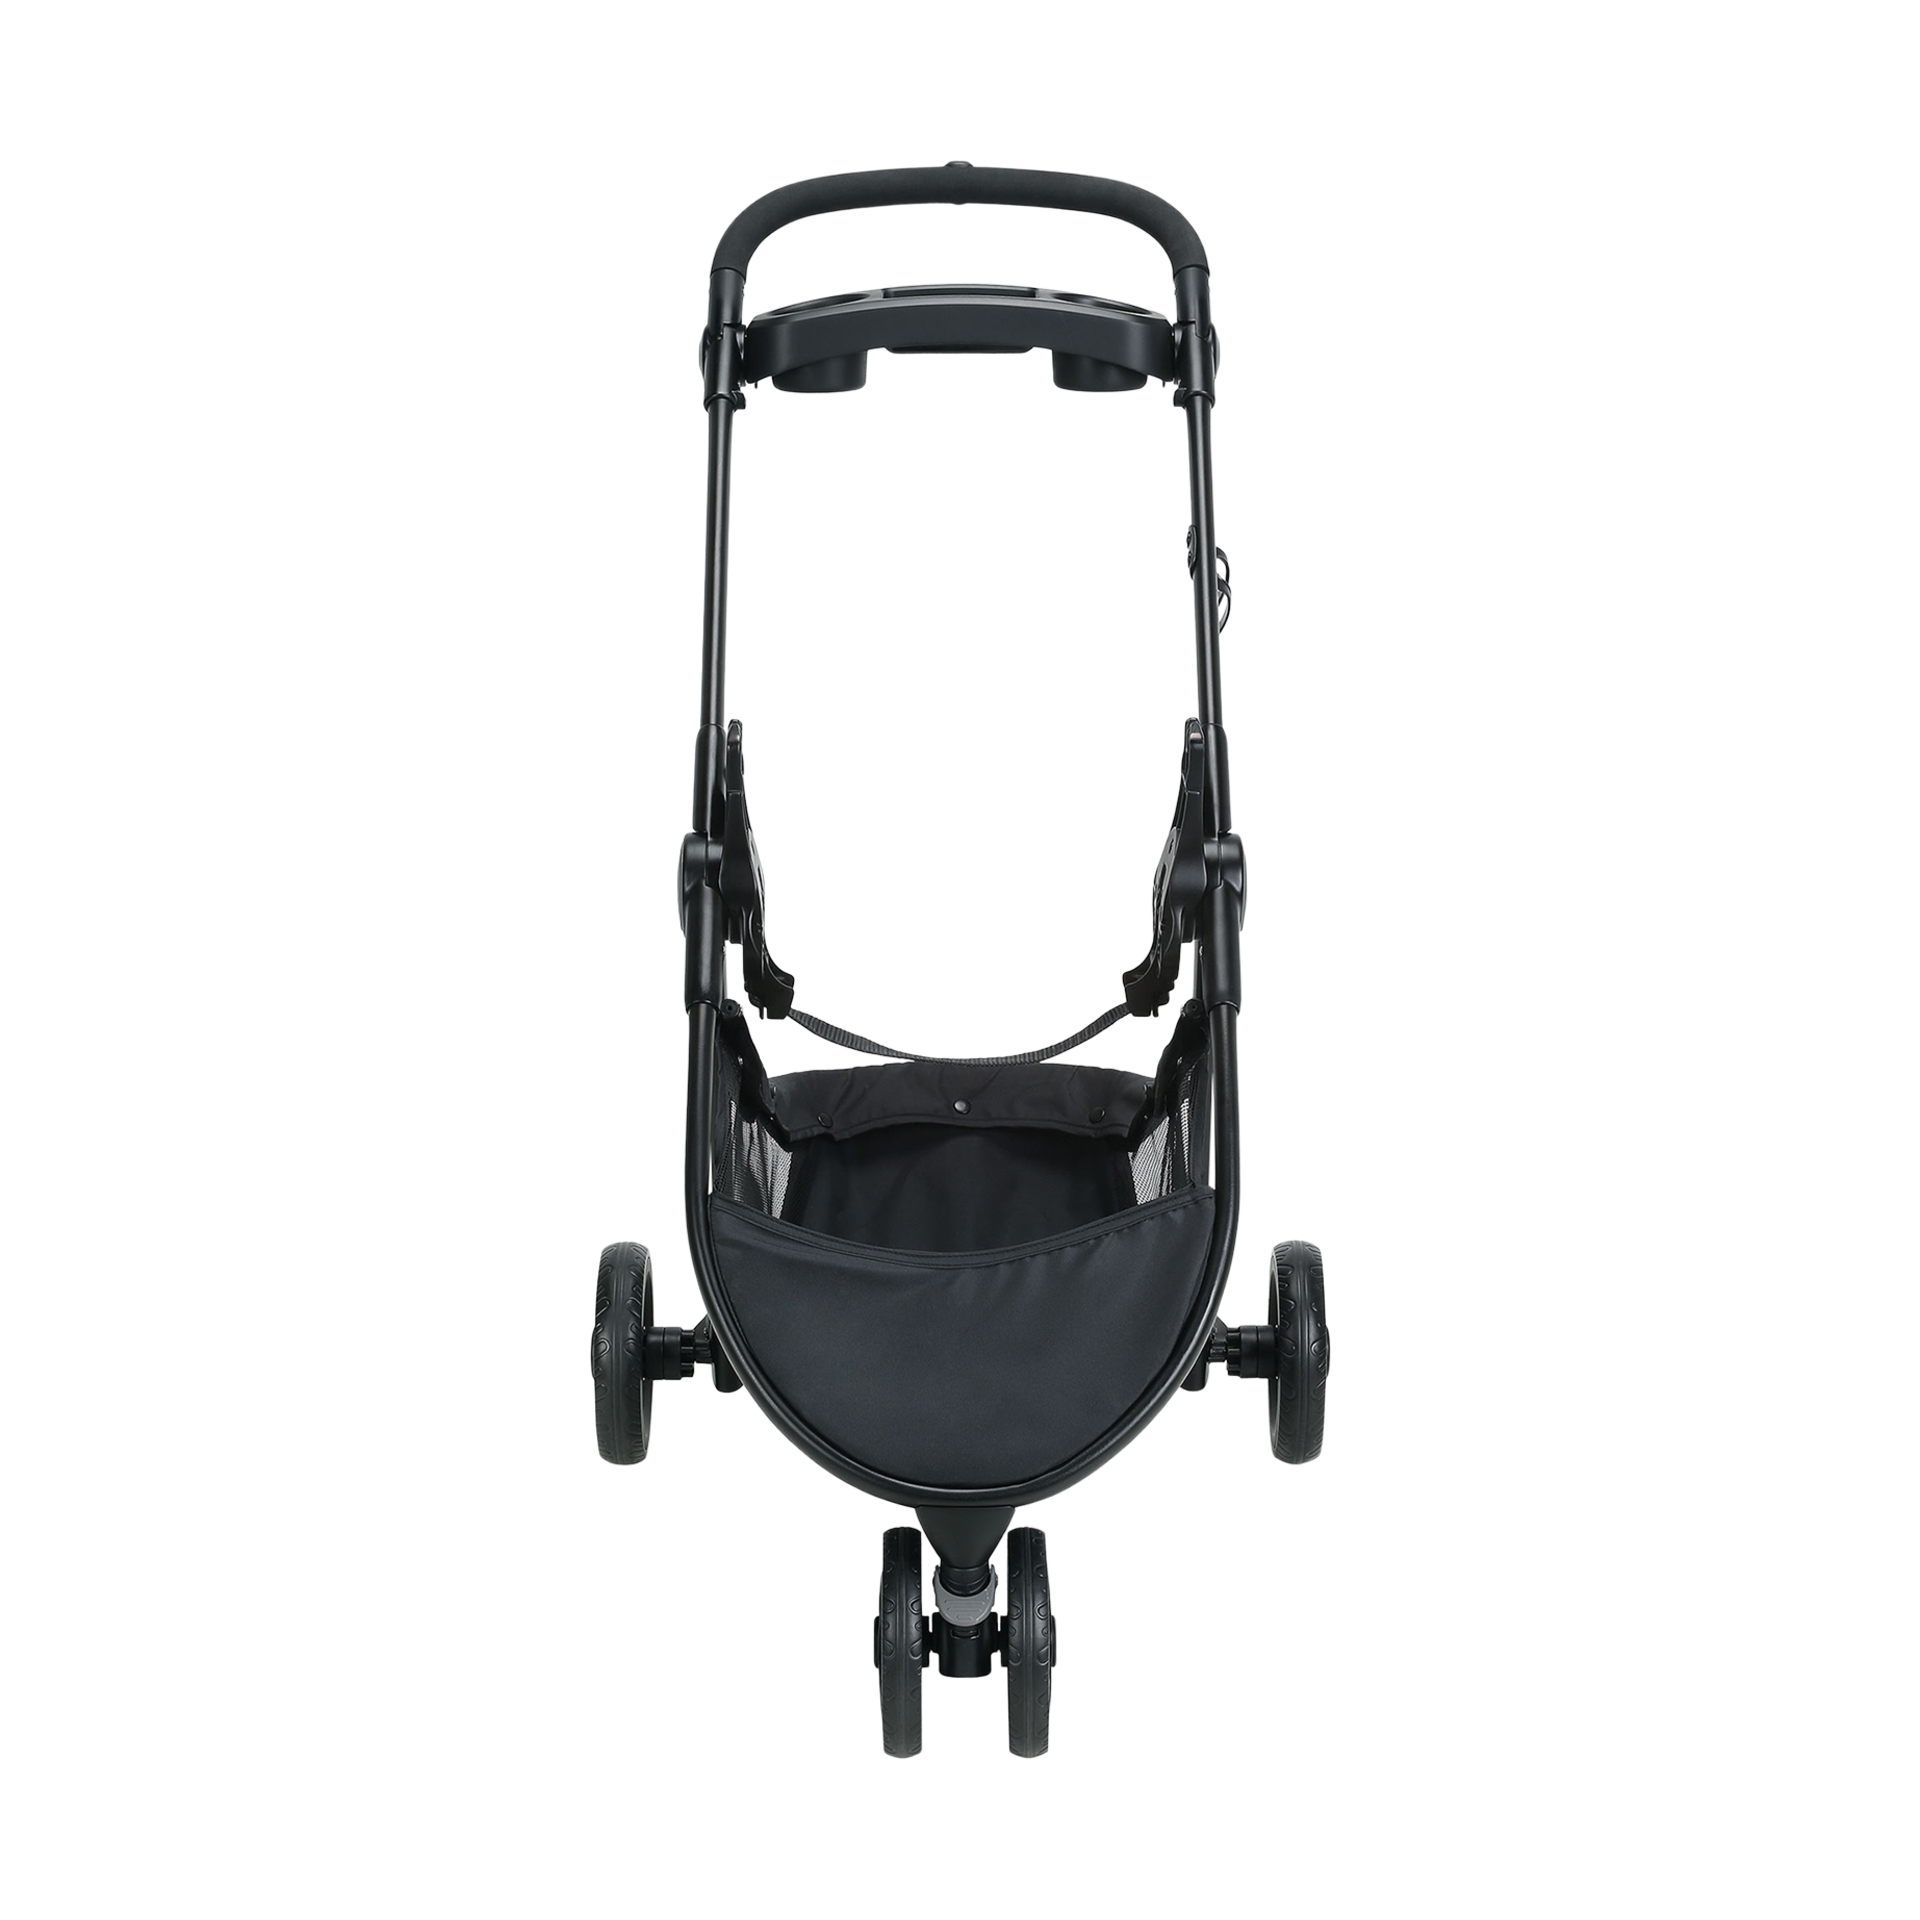 graco snugrider elite stroller frame compatibility